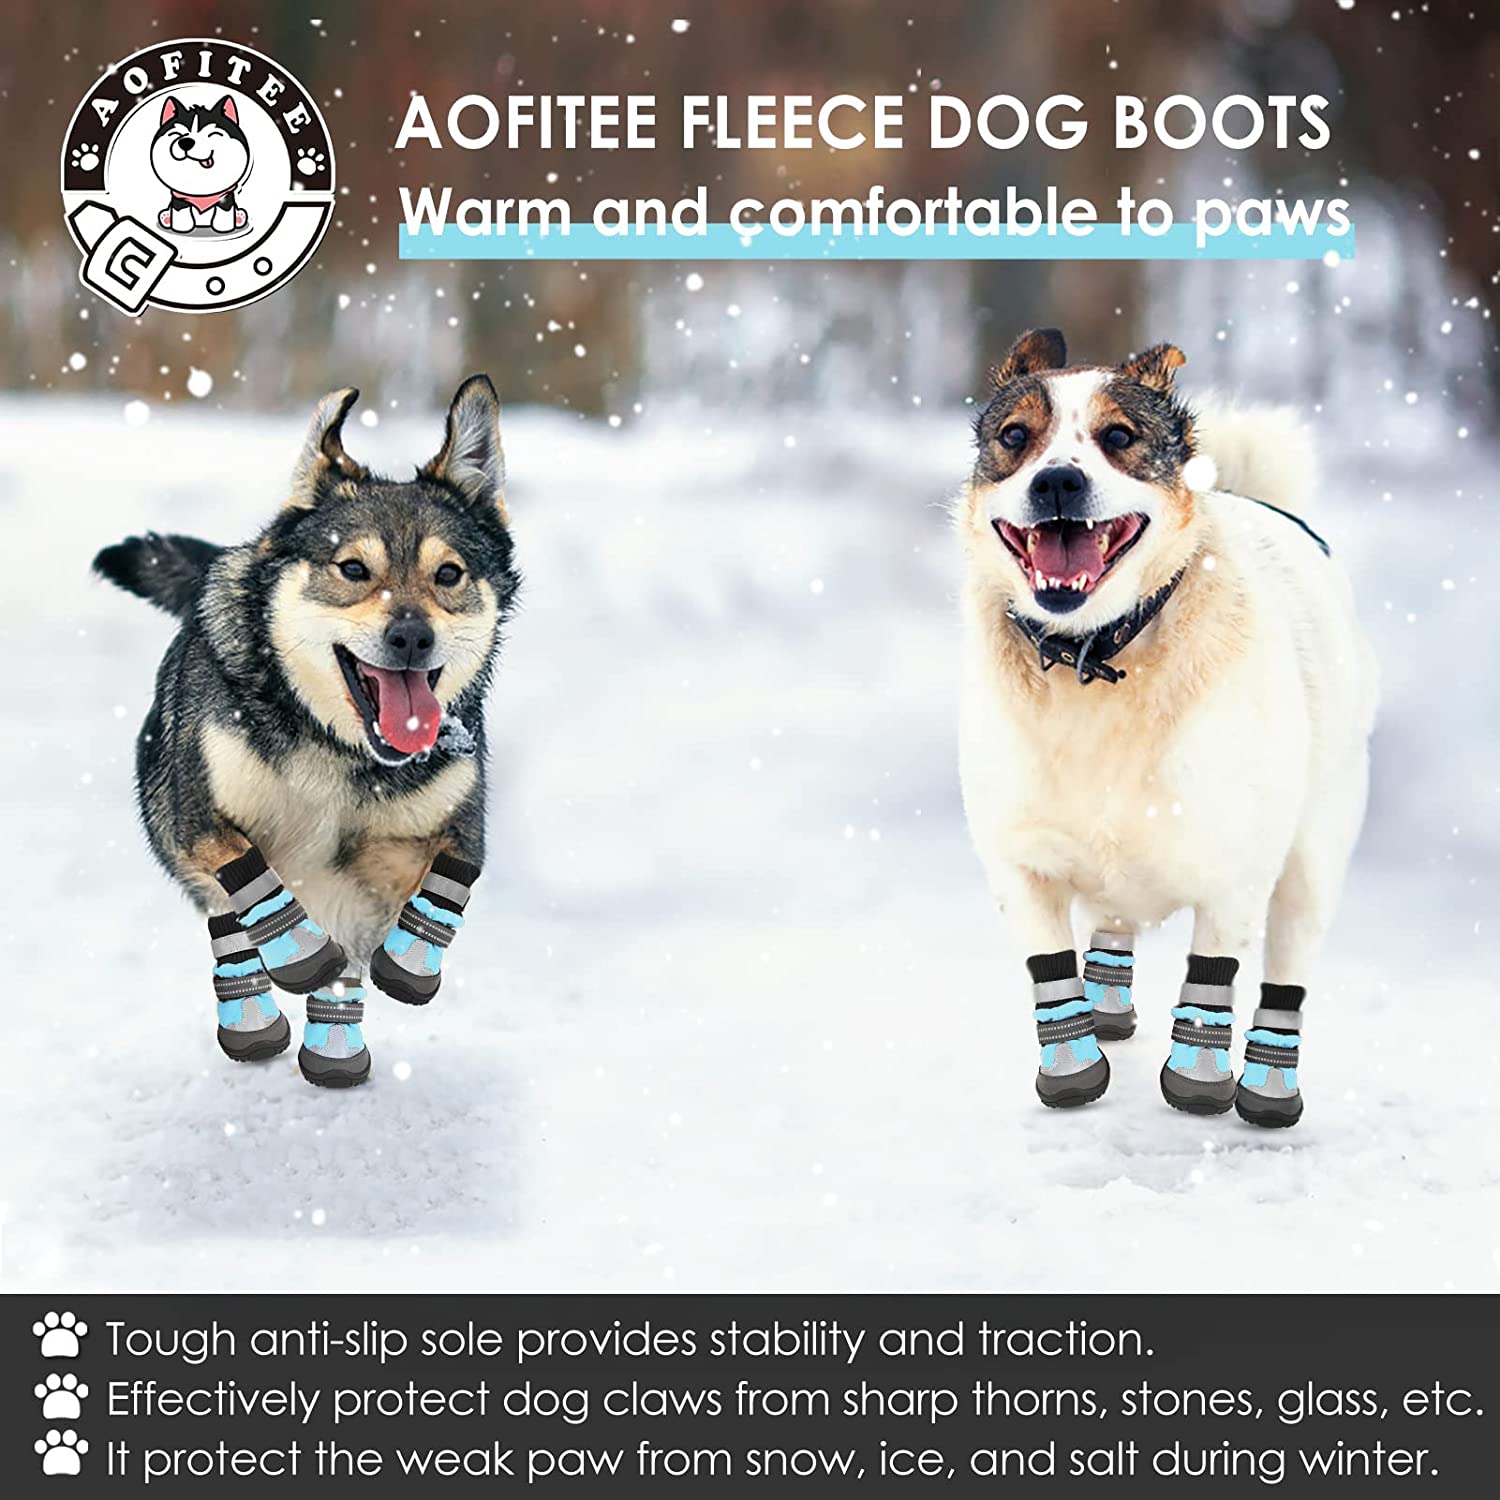 دوخت عالی، طراحی انعکاسی نقره ای و ترکیب رنگ کفش های سگ به گونه ای طراحی شده اند که سگ شما را در هنگام پیاده روی، دویدن و پیاده روی در فضای باز زیباتر و شیک تر نشان دهد!